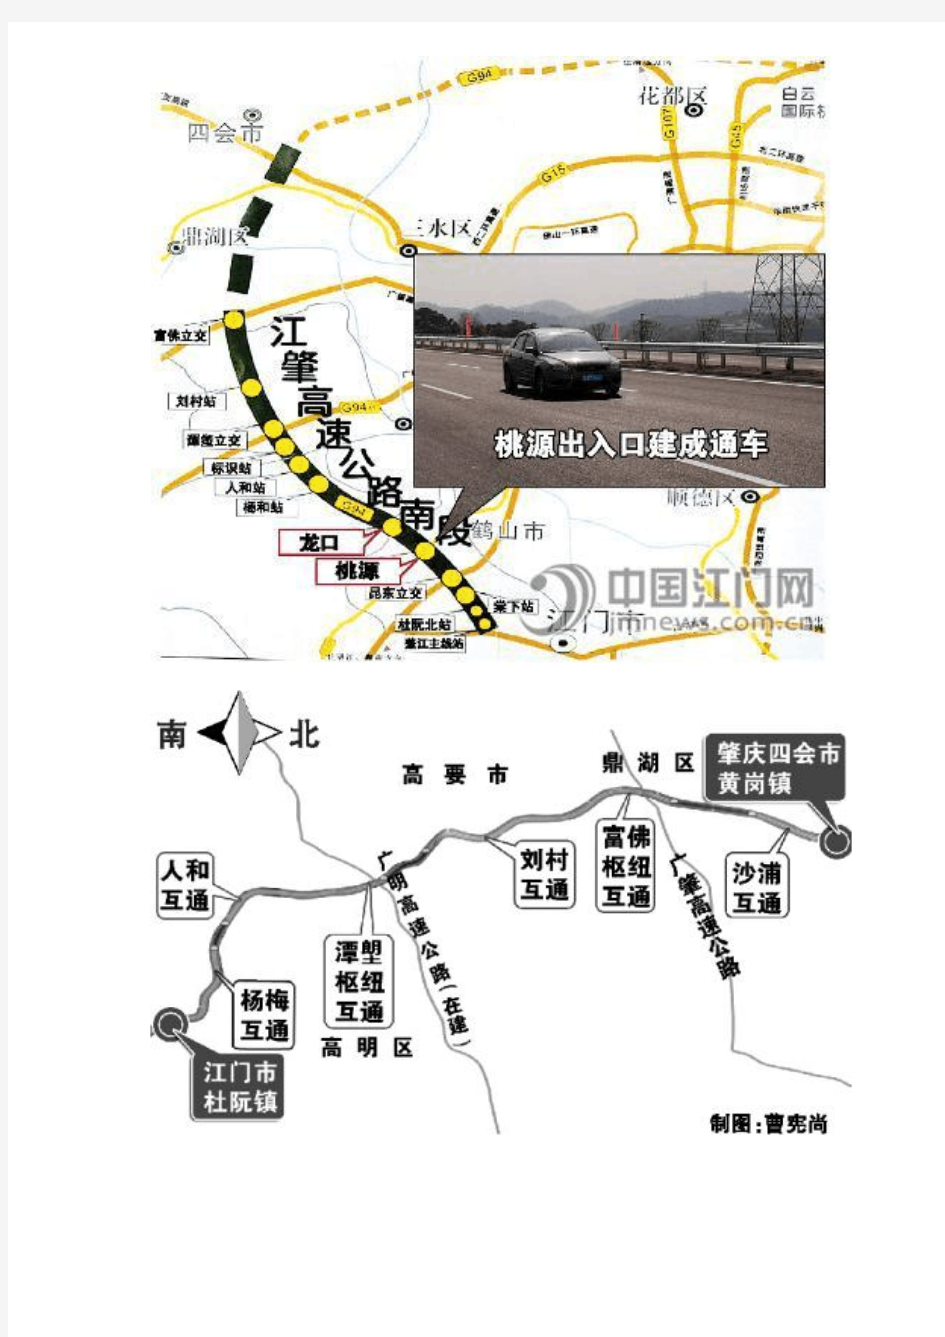 江肇高速的详细线路图与各个出入口